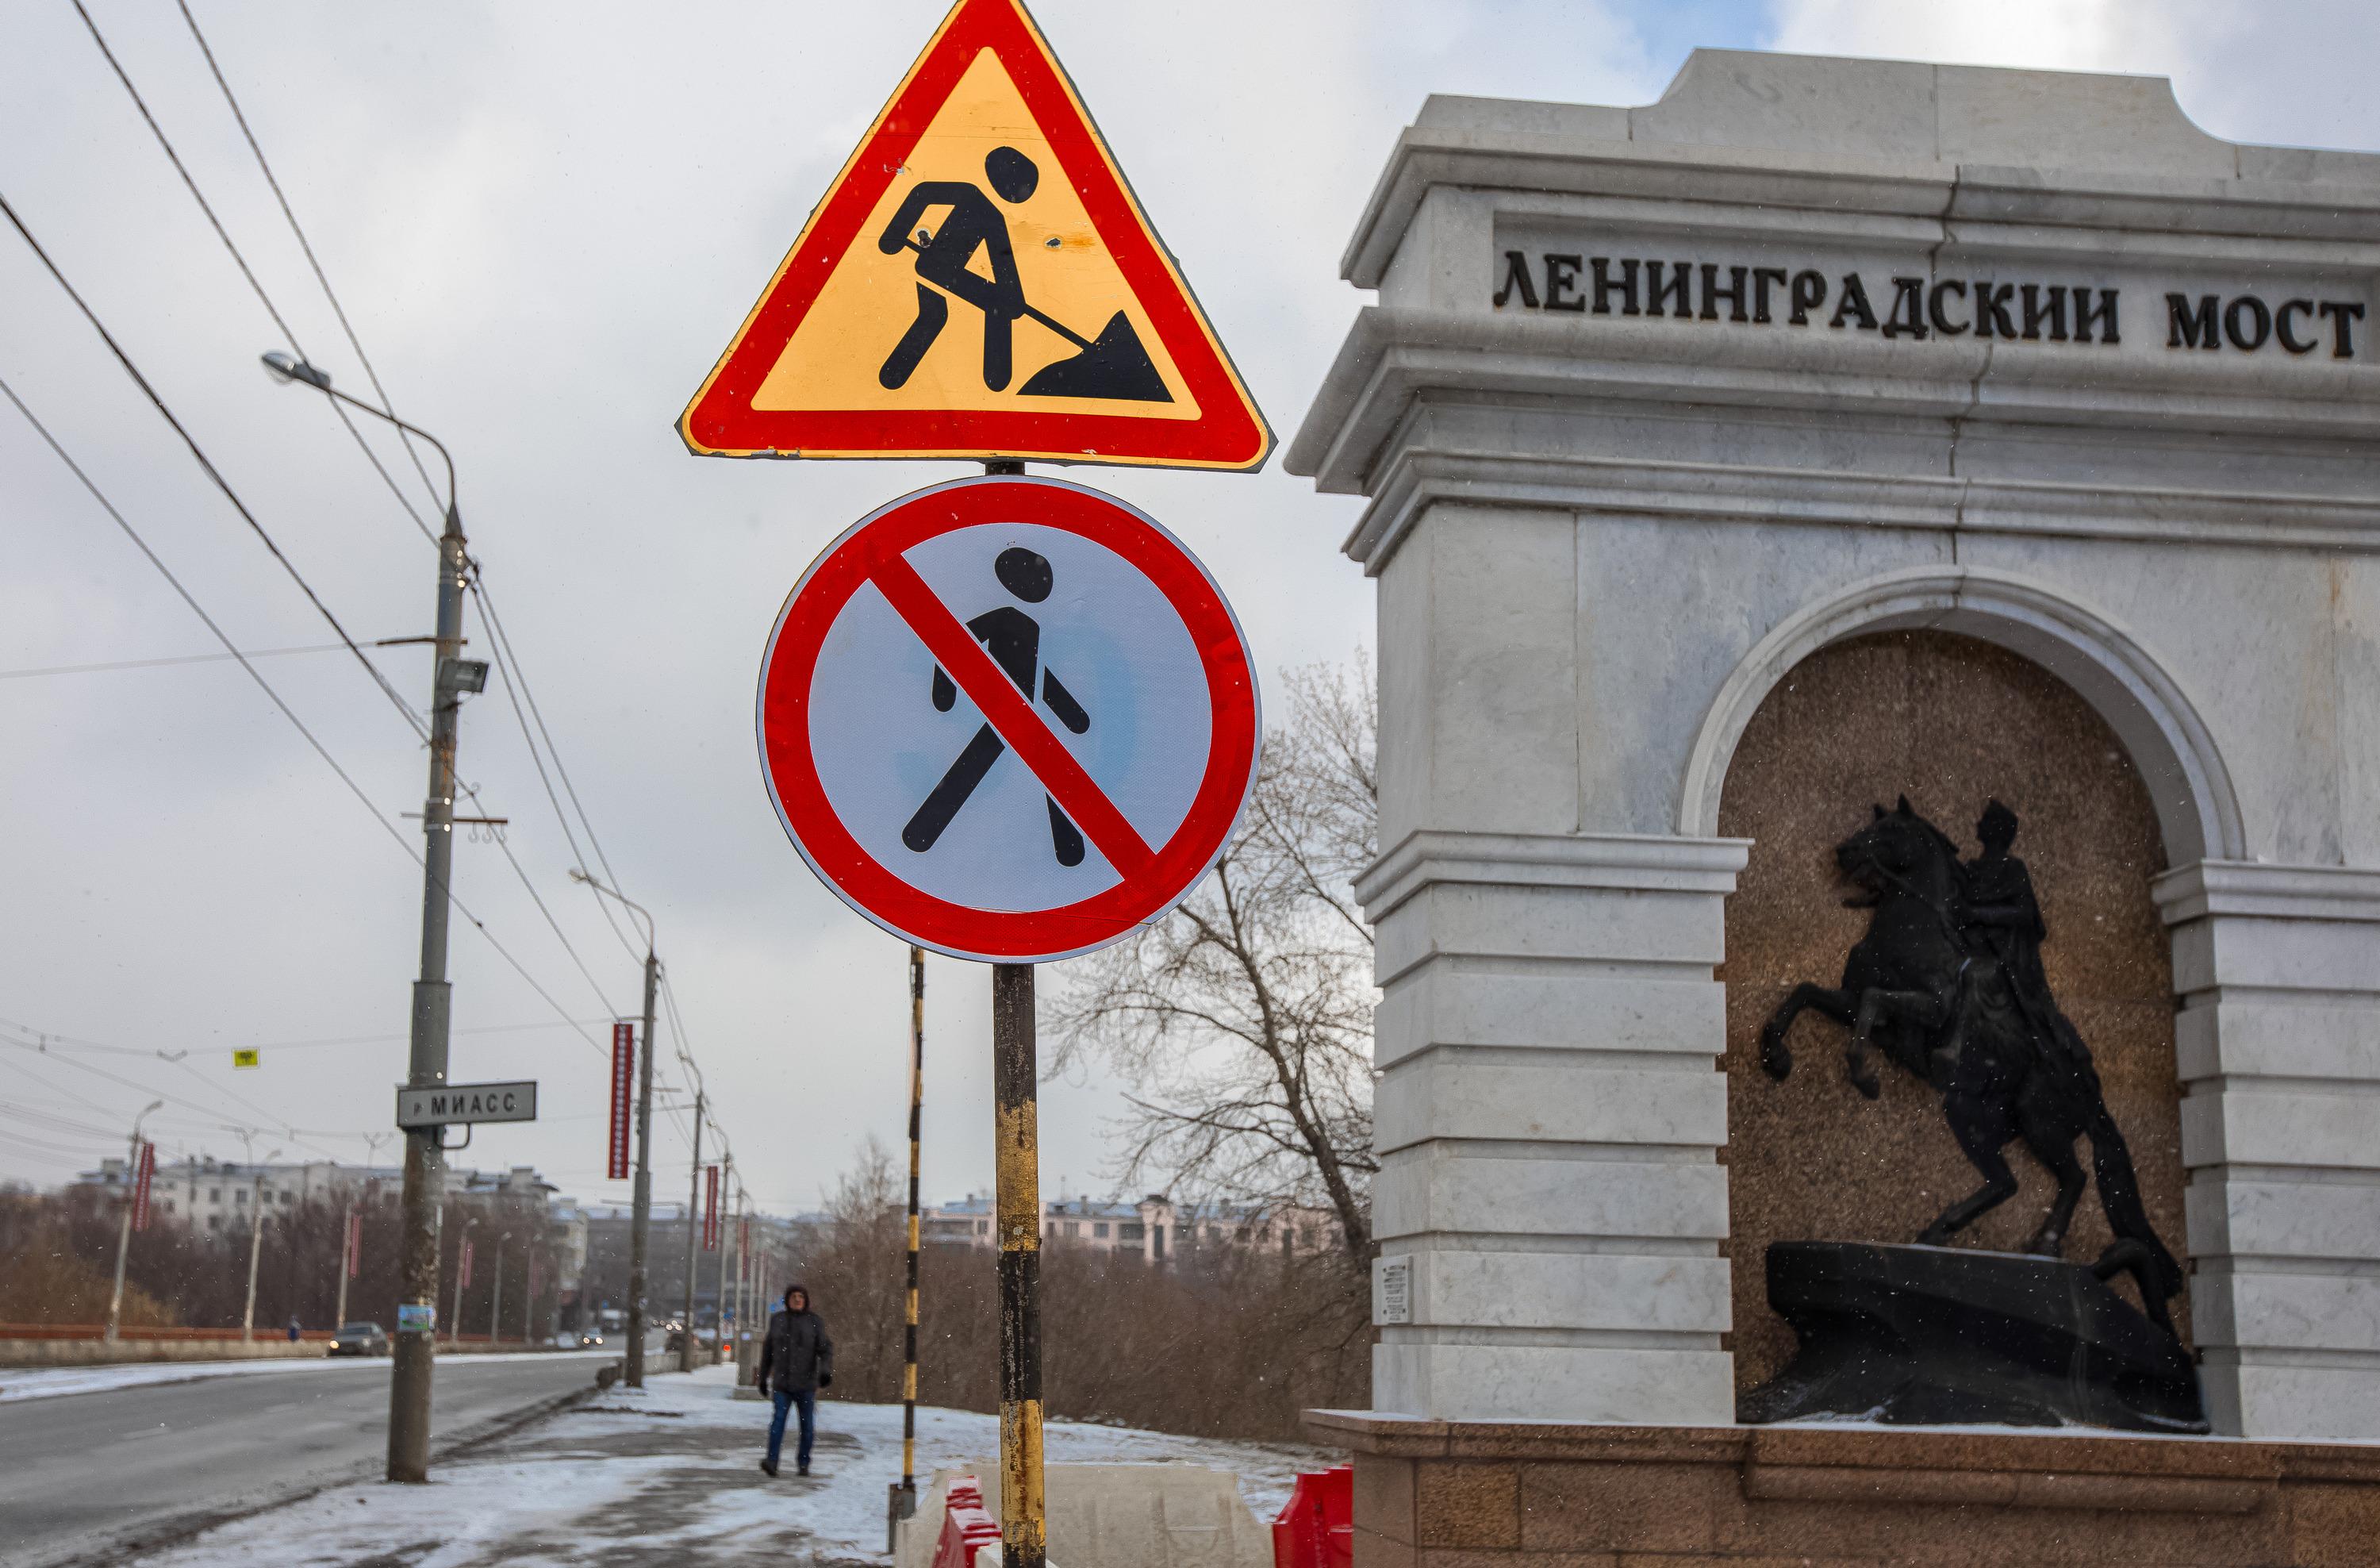 В Челябинске с 1 мая закроют Ленинградский мост. Как объезжать?*1